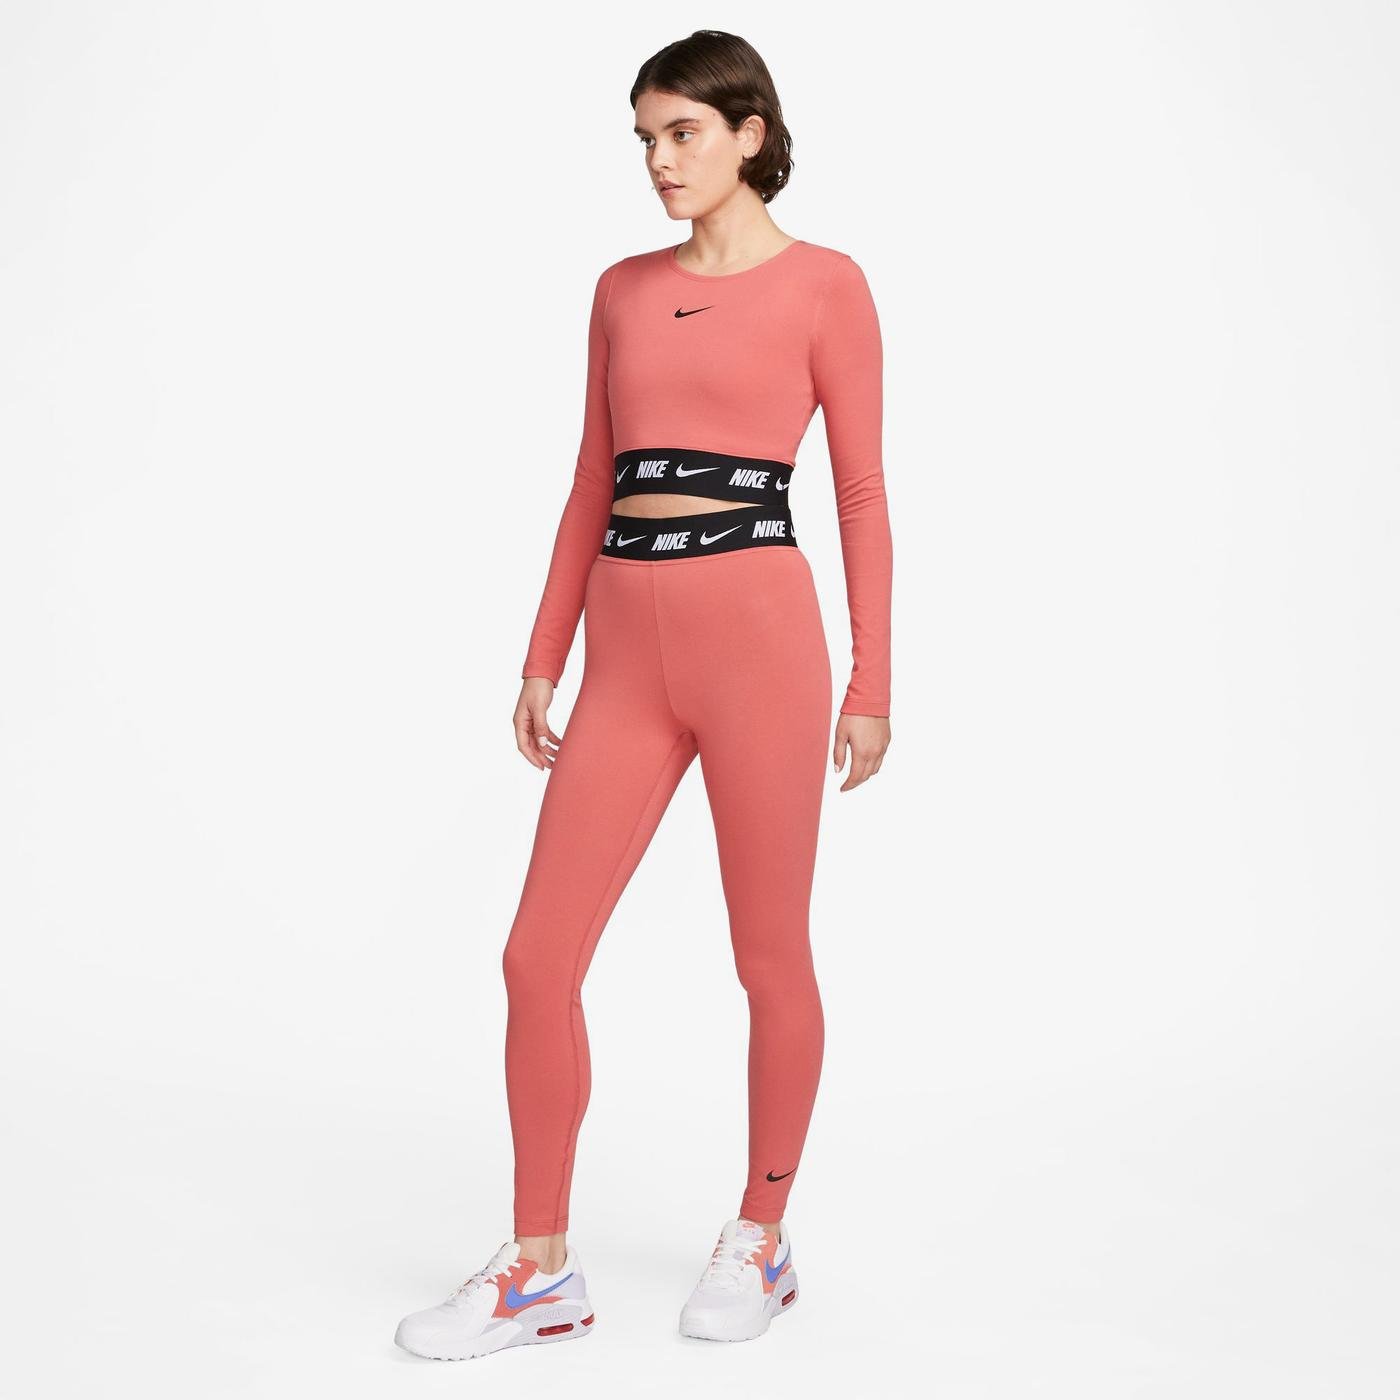 Nike Sportswear Club Günlük Stil Kadın Tayt DM4651 Fiyatları